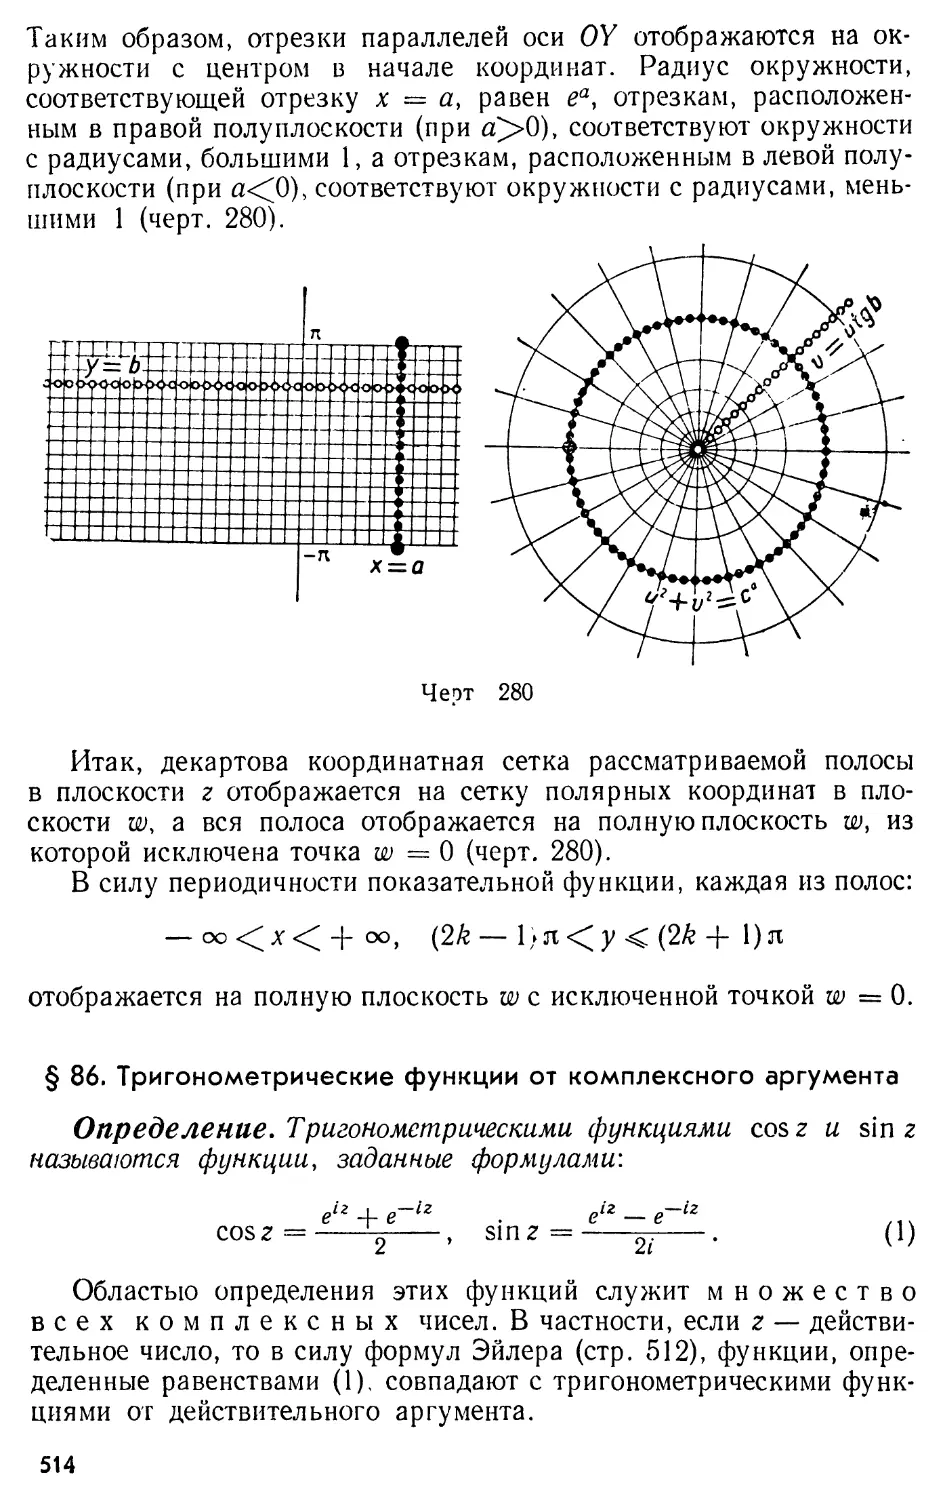 § 86. Тригонометрические функции от комплексного аргумента